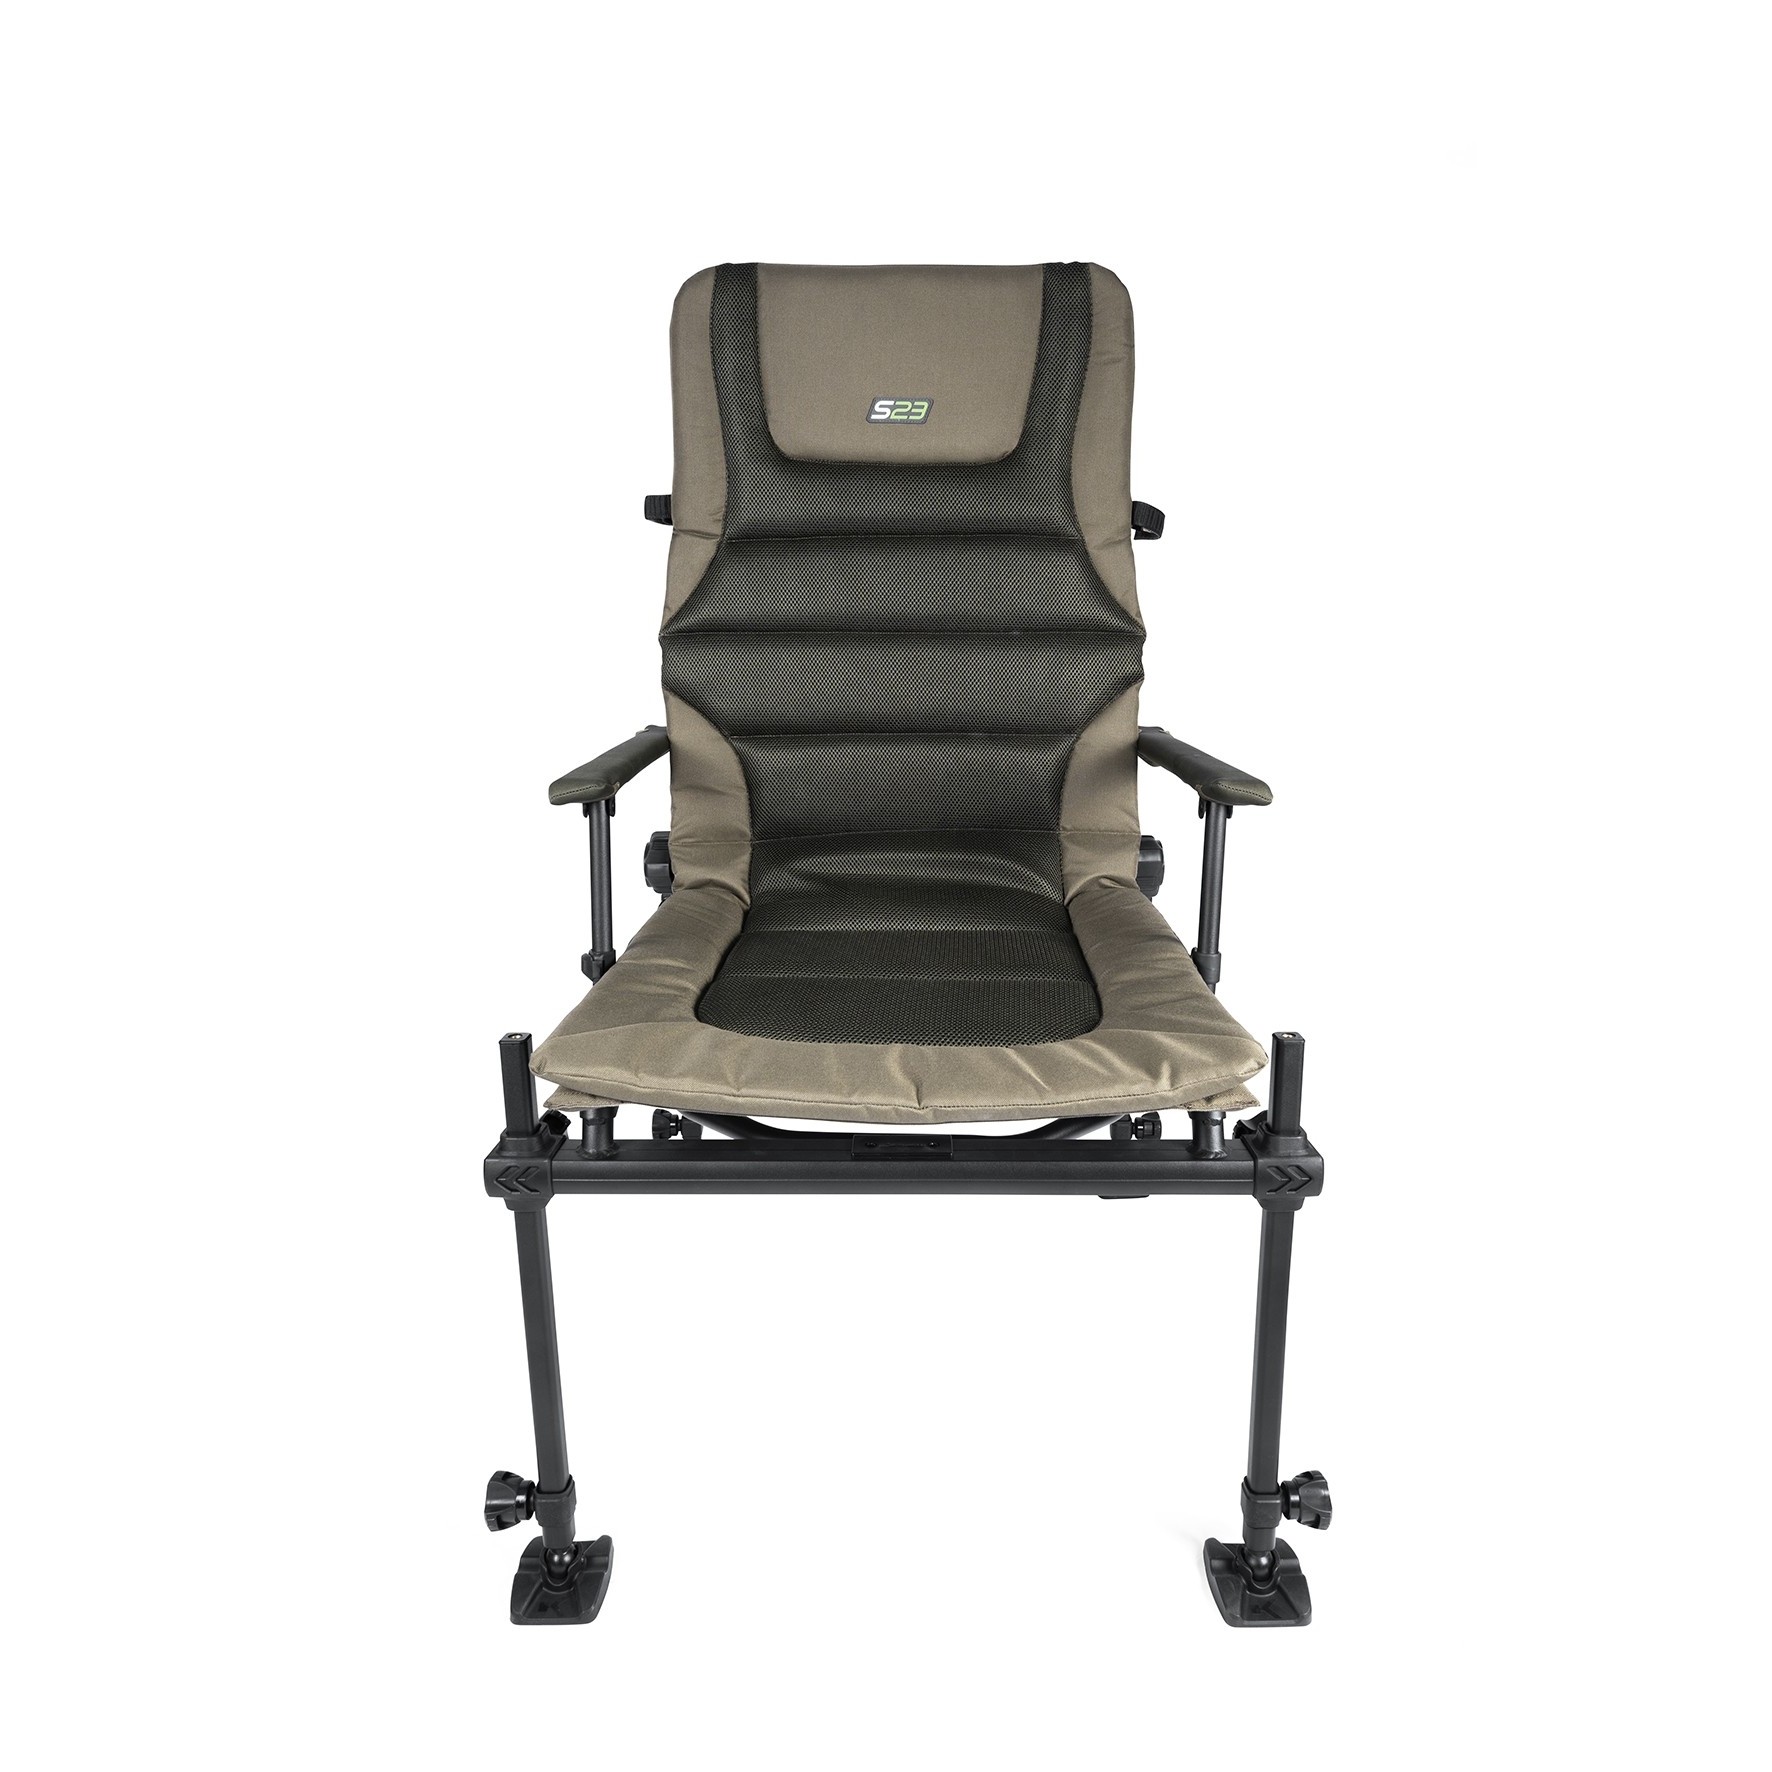 Scaun Korum Deluxe Accesory Chair S23 - K0300023